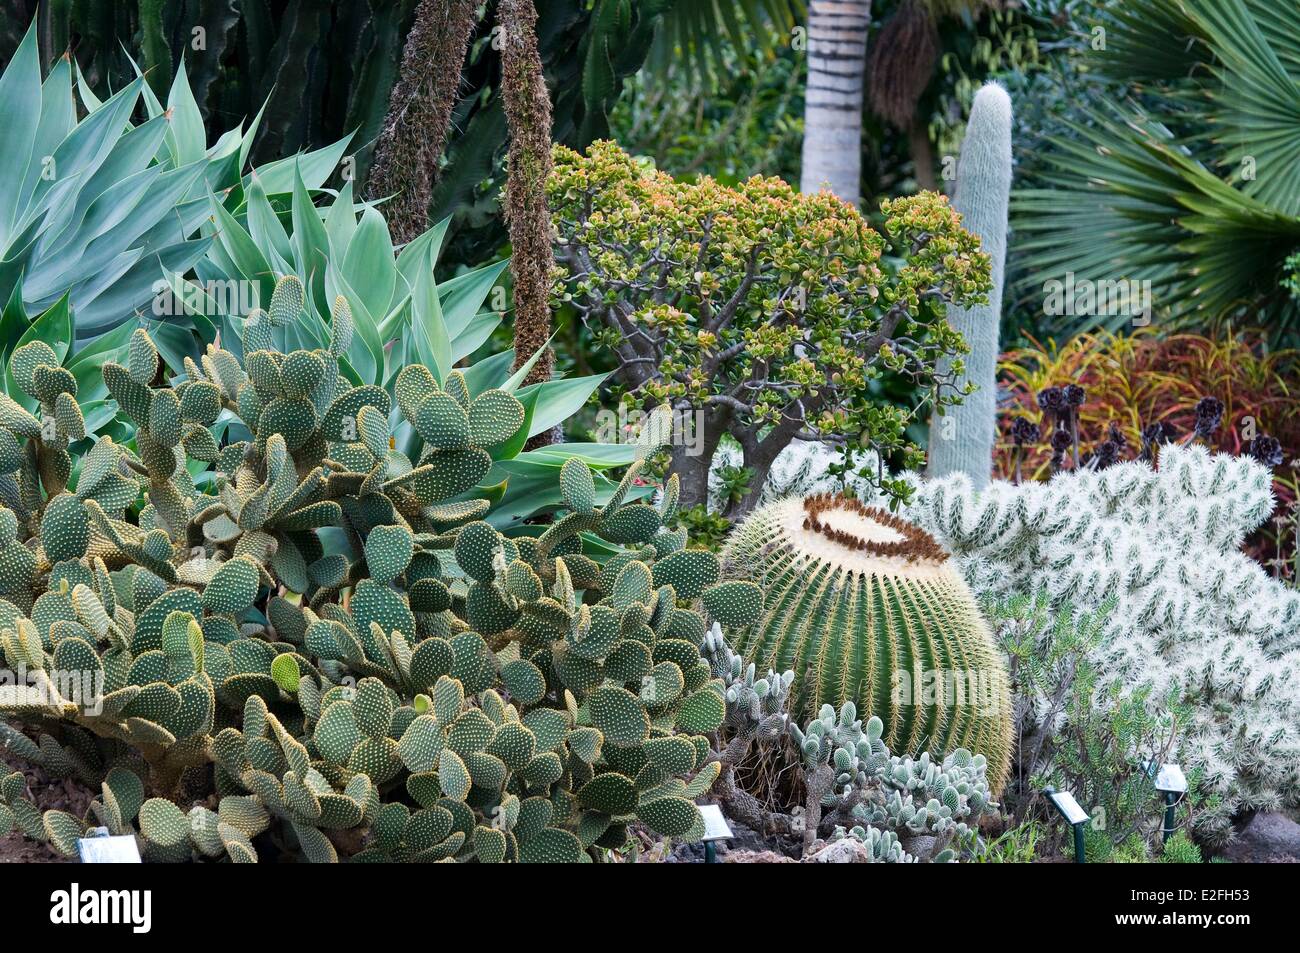 España, Islas Canarias, Gran Canaria, Las Palmas, Arucas, Marquesa de jardín jardín de cactus Foto de stock